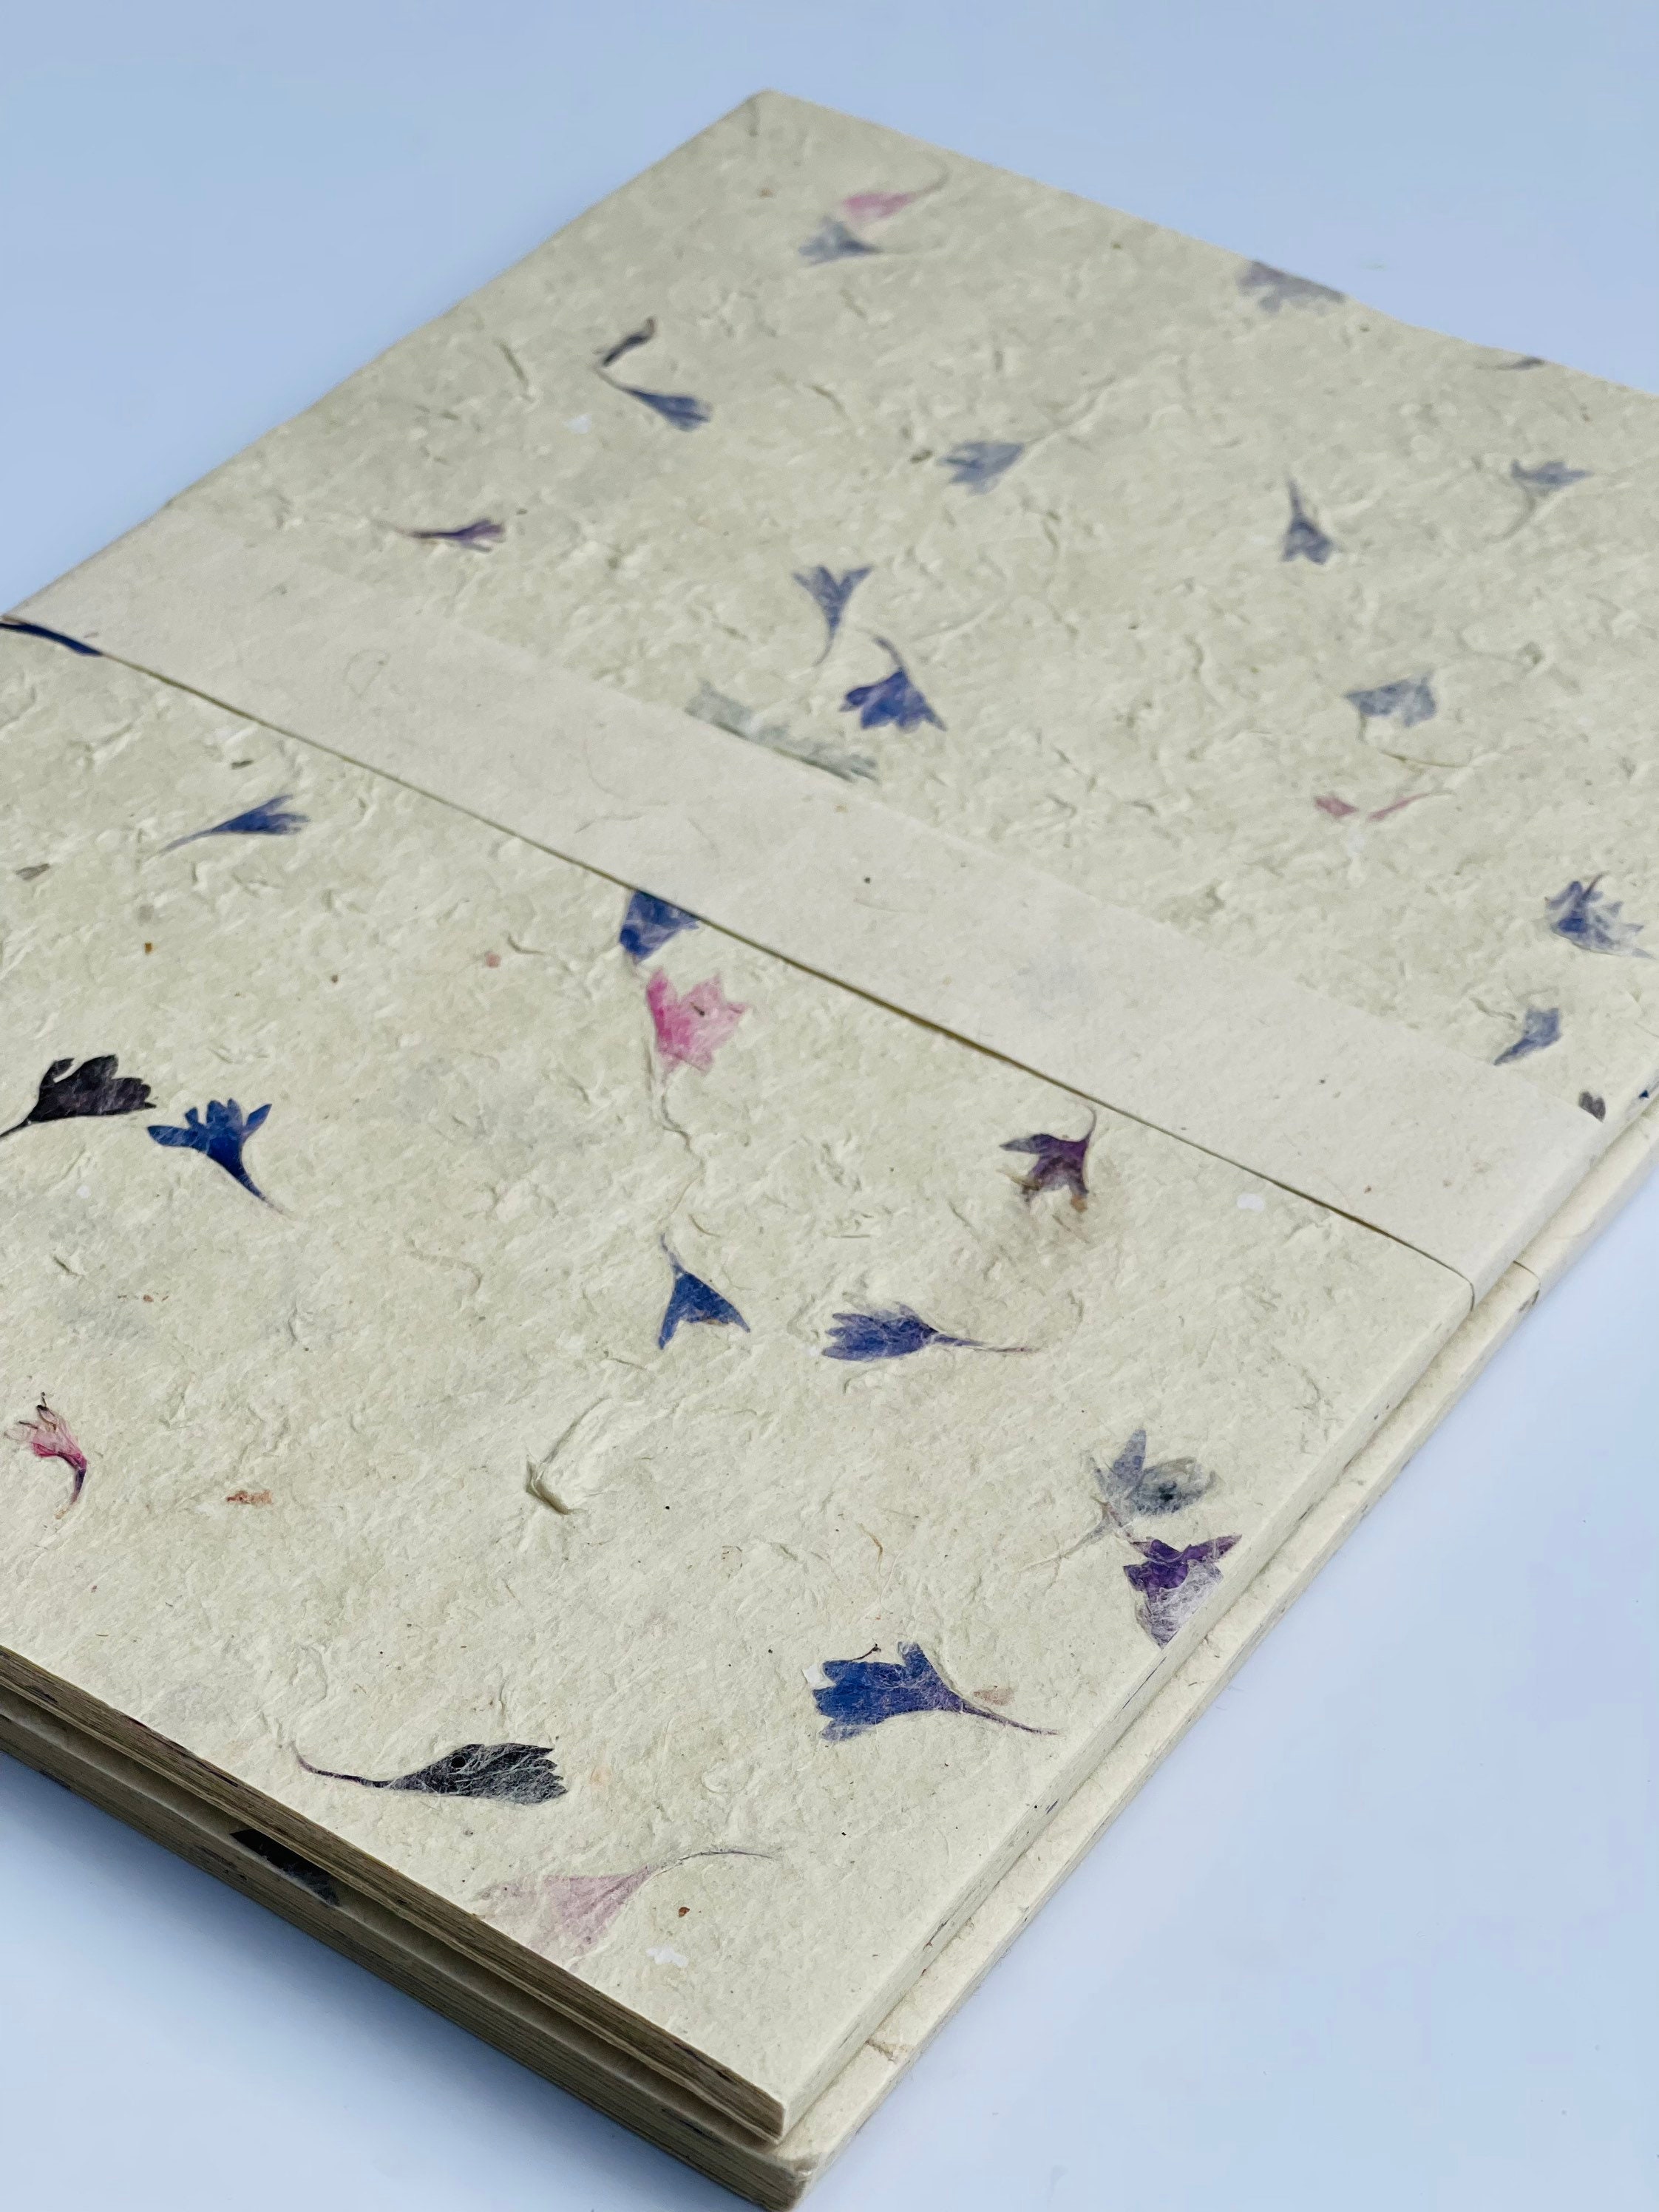 11 x 17 Eco Natural Handmade Paper (No Seeds)